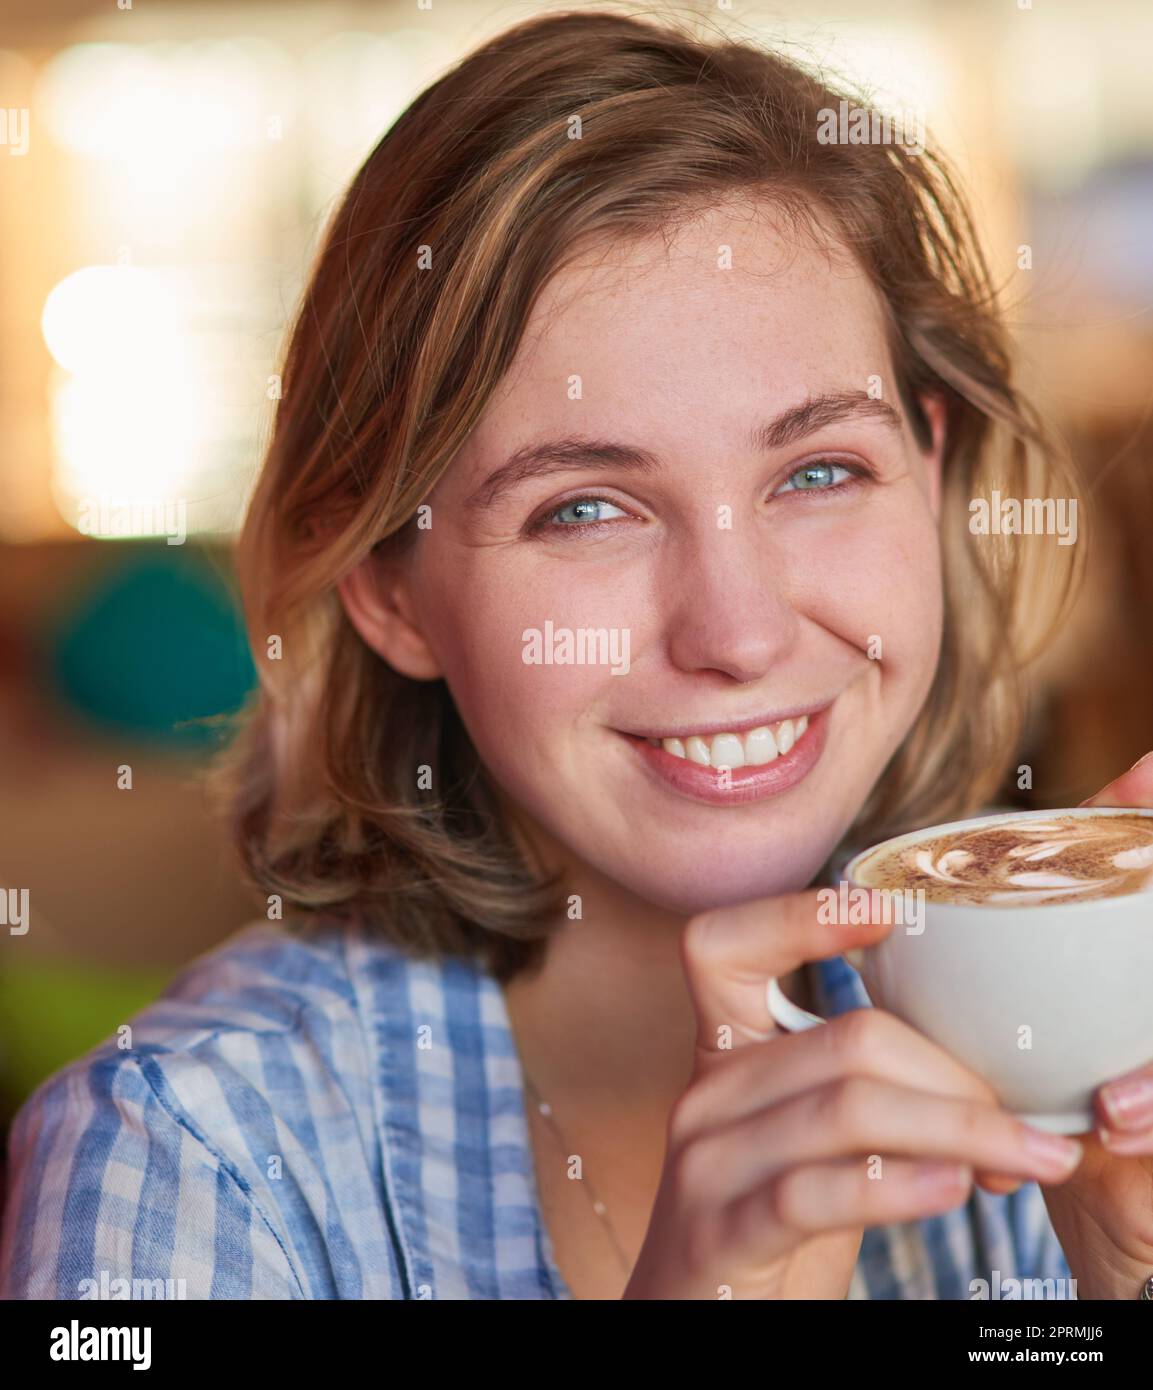 Hausgemachte Cappuccinos schmecken einfach besser. Eine glückliche junge Frau trinkt zu Hause einen Cappuccino. Stockfoto